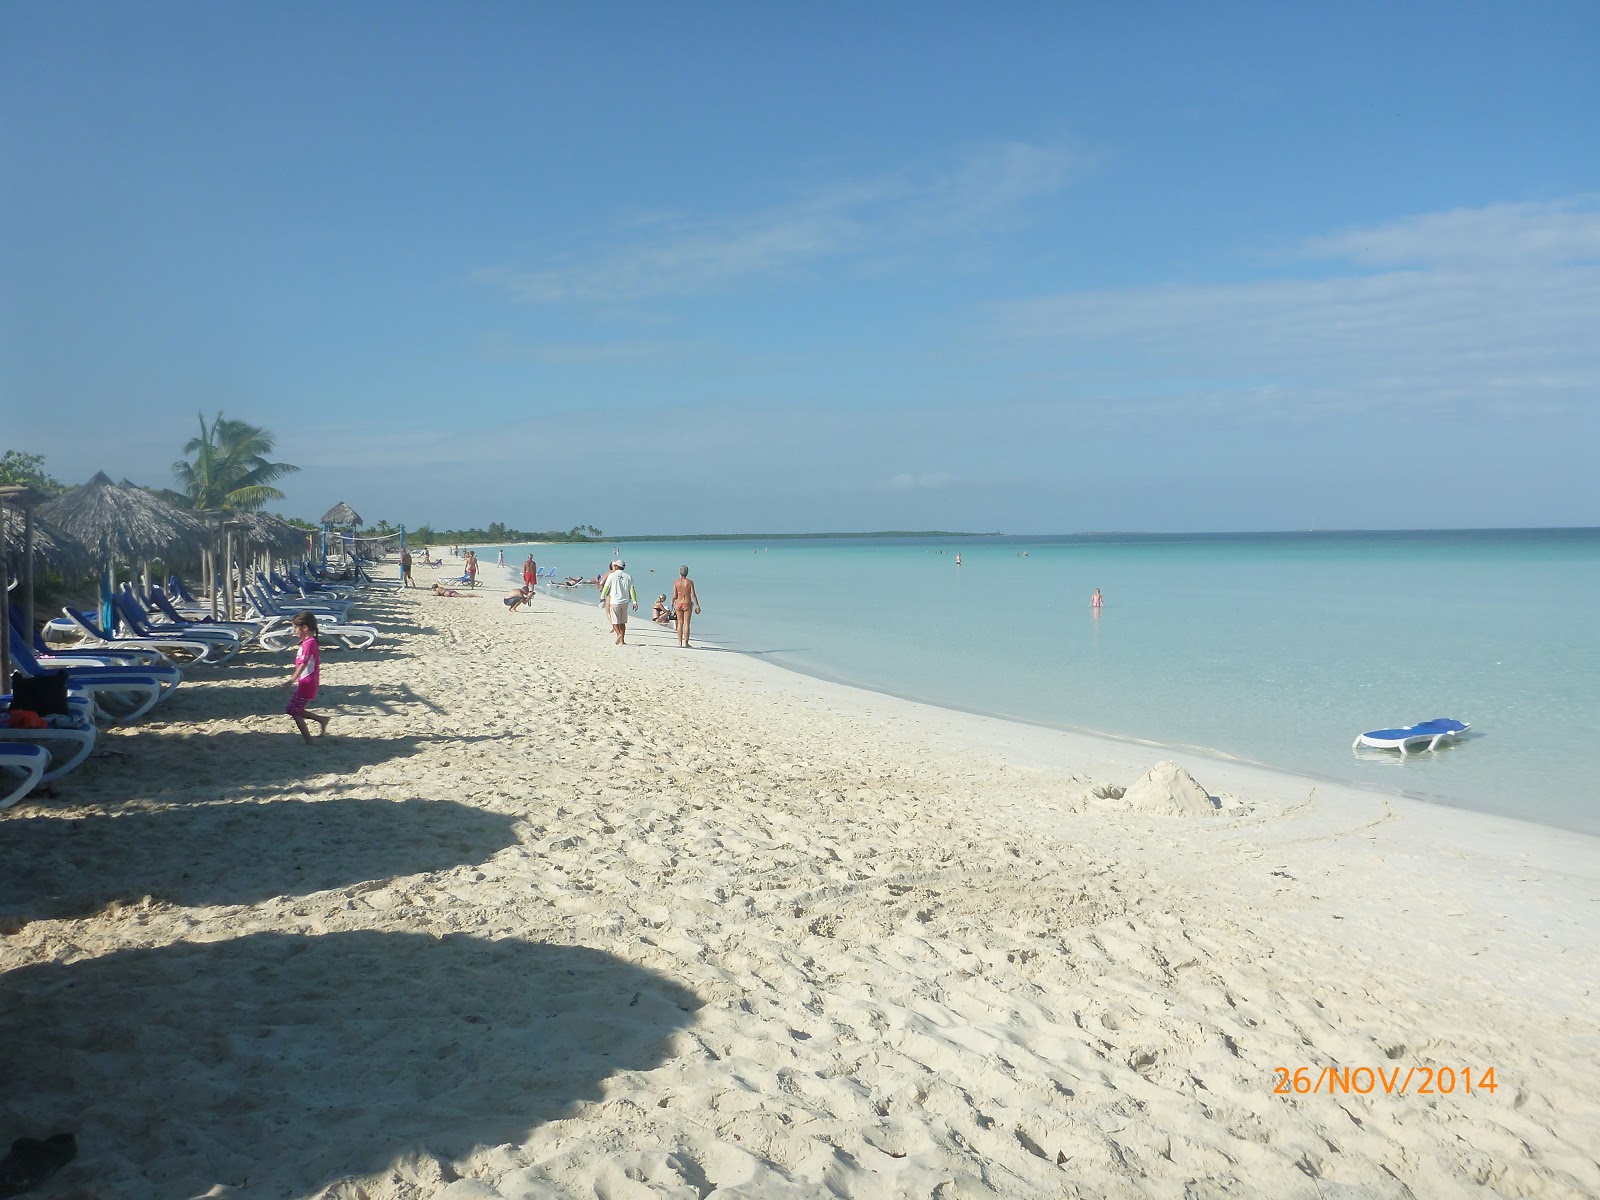 Playa Ensenachos'in fotoğrafı parlak ince kum yüzey ile